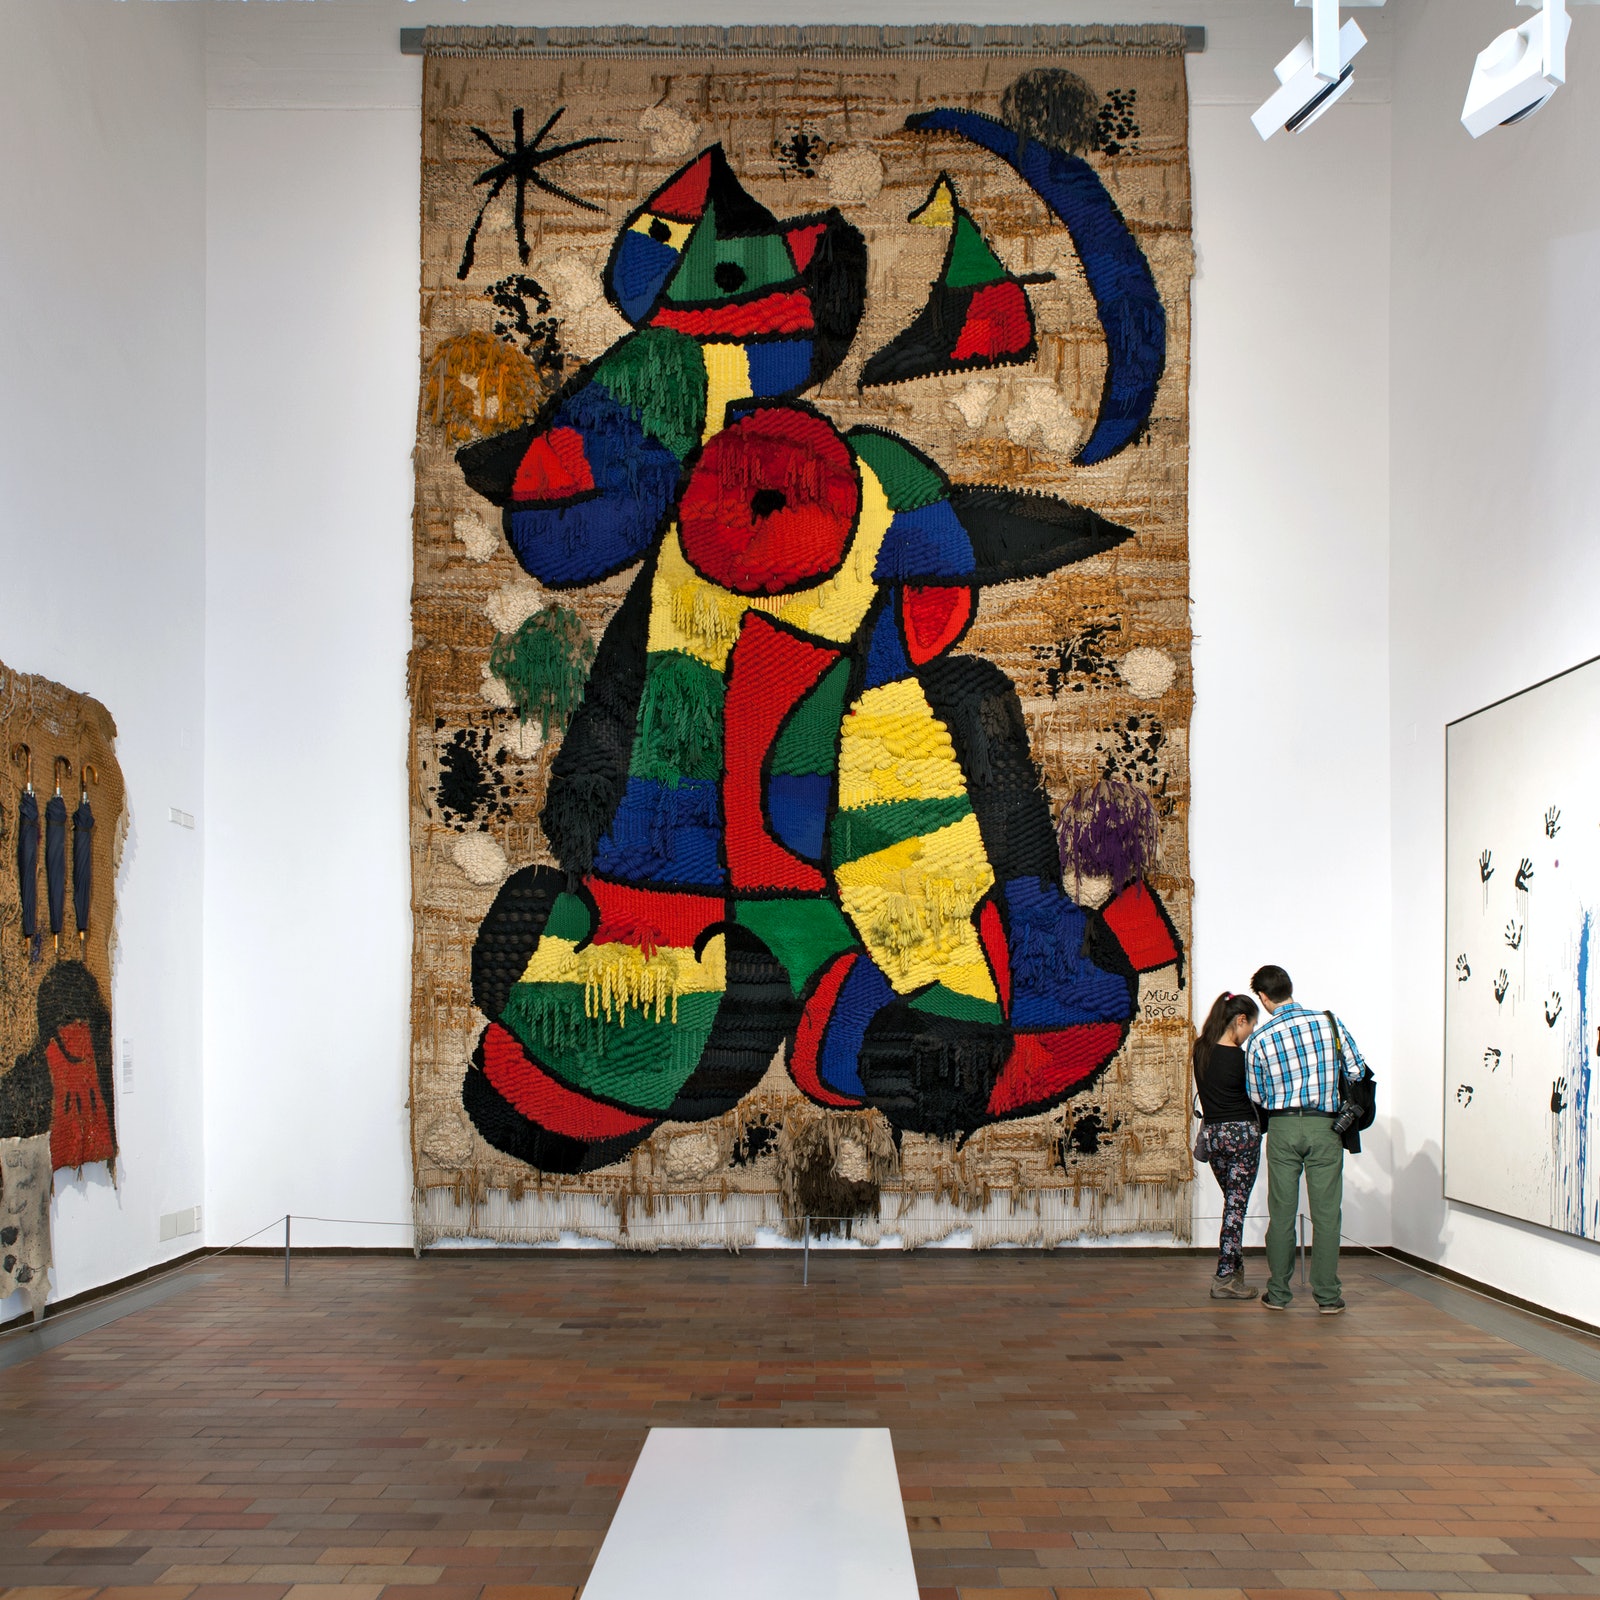 Fundació Joan Miró: Skip The Line in Spain